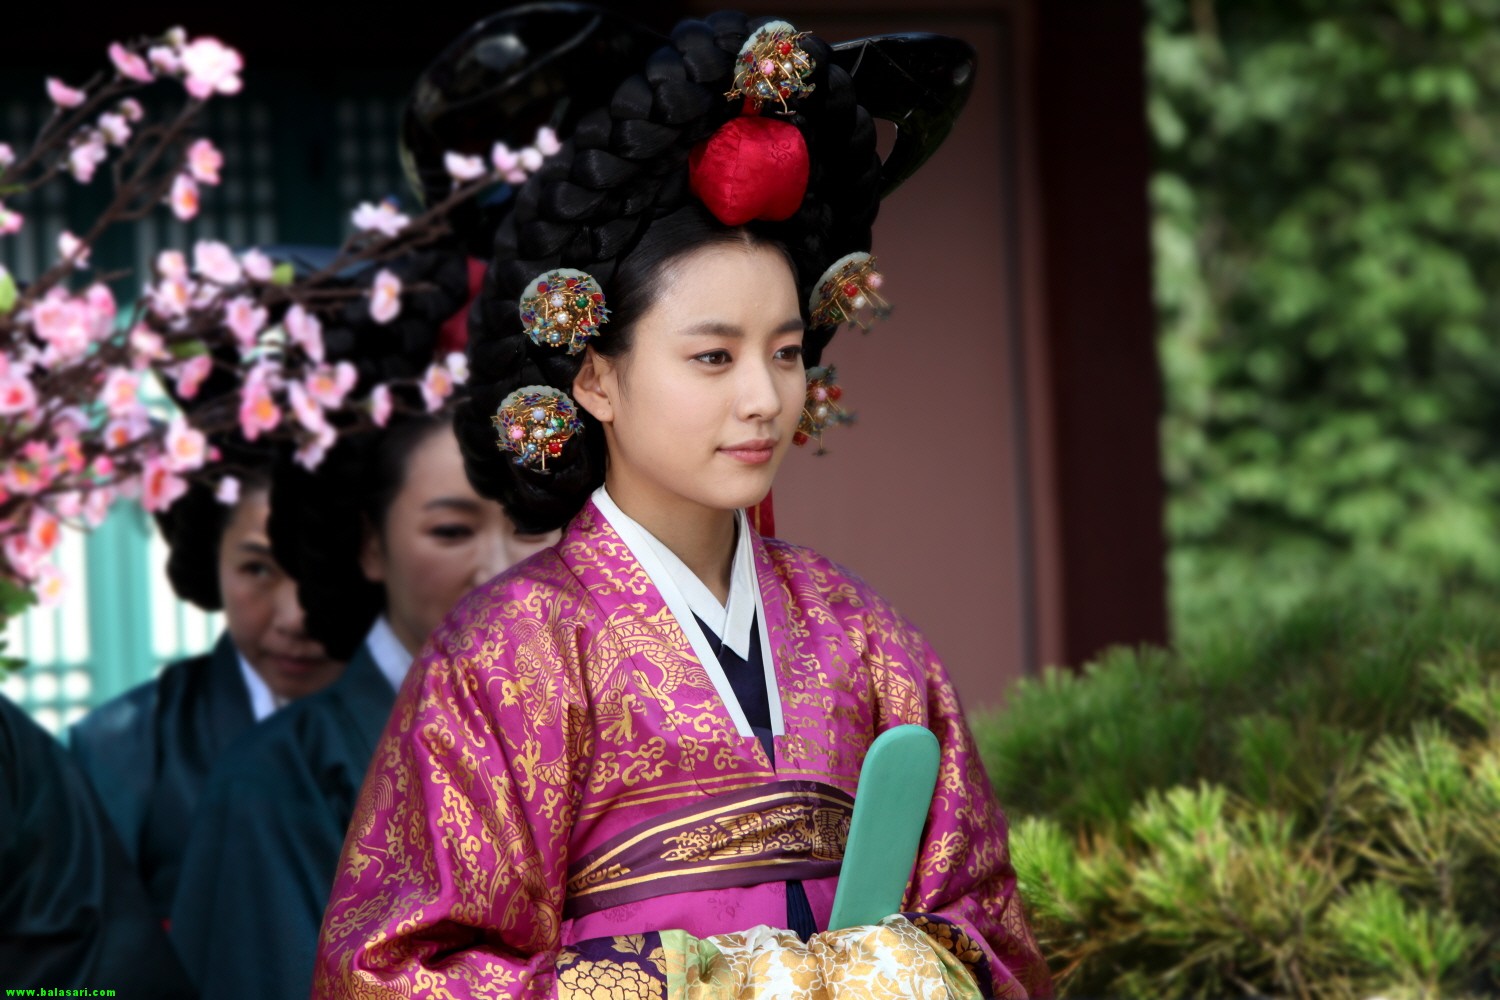 بیوگرافی هان هیو جوو بازیگر سریال کره ای افسانه دونگ یی